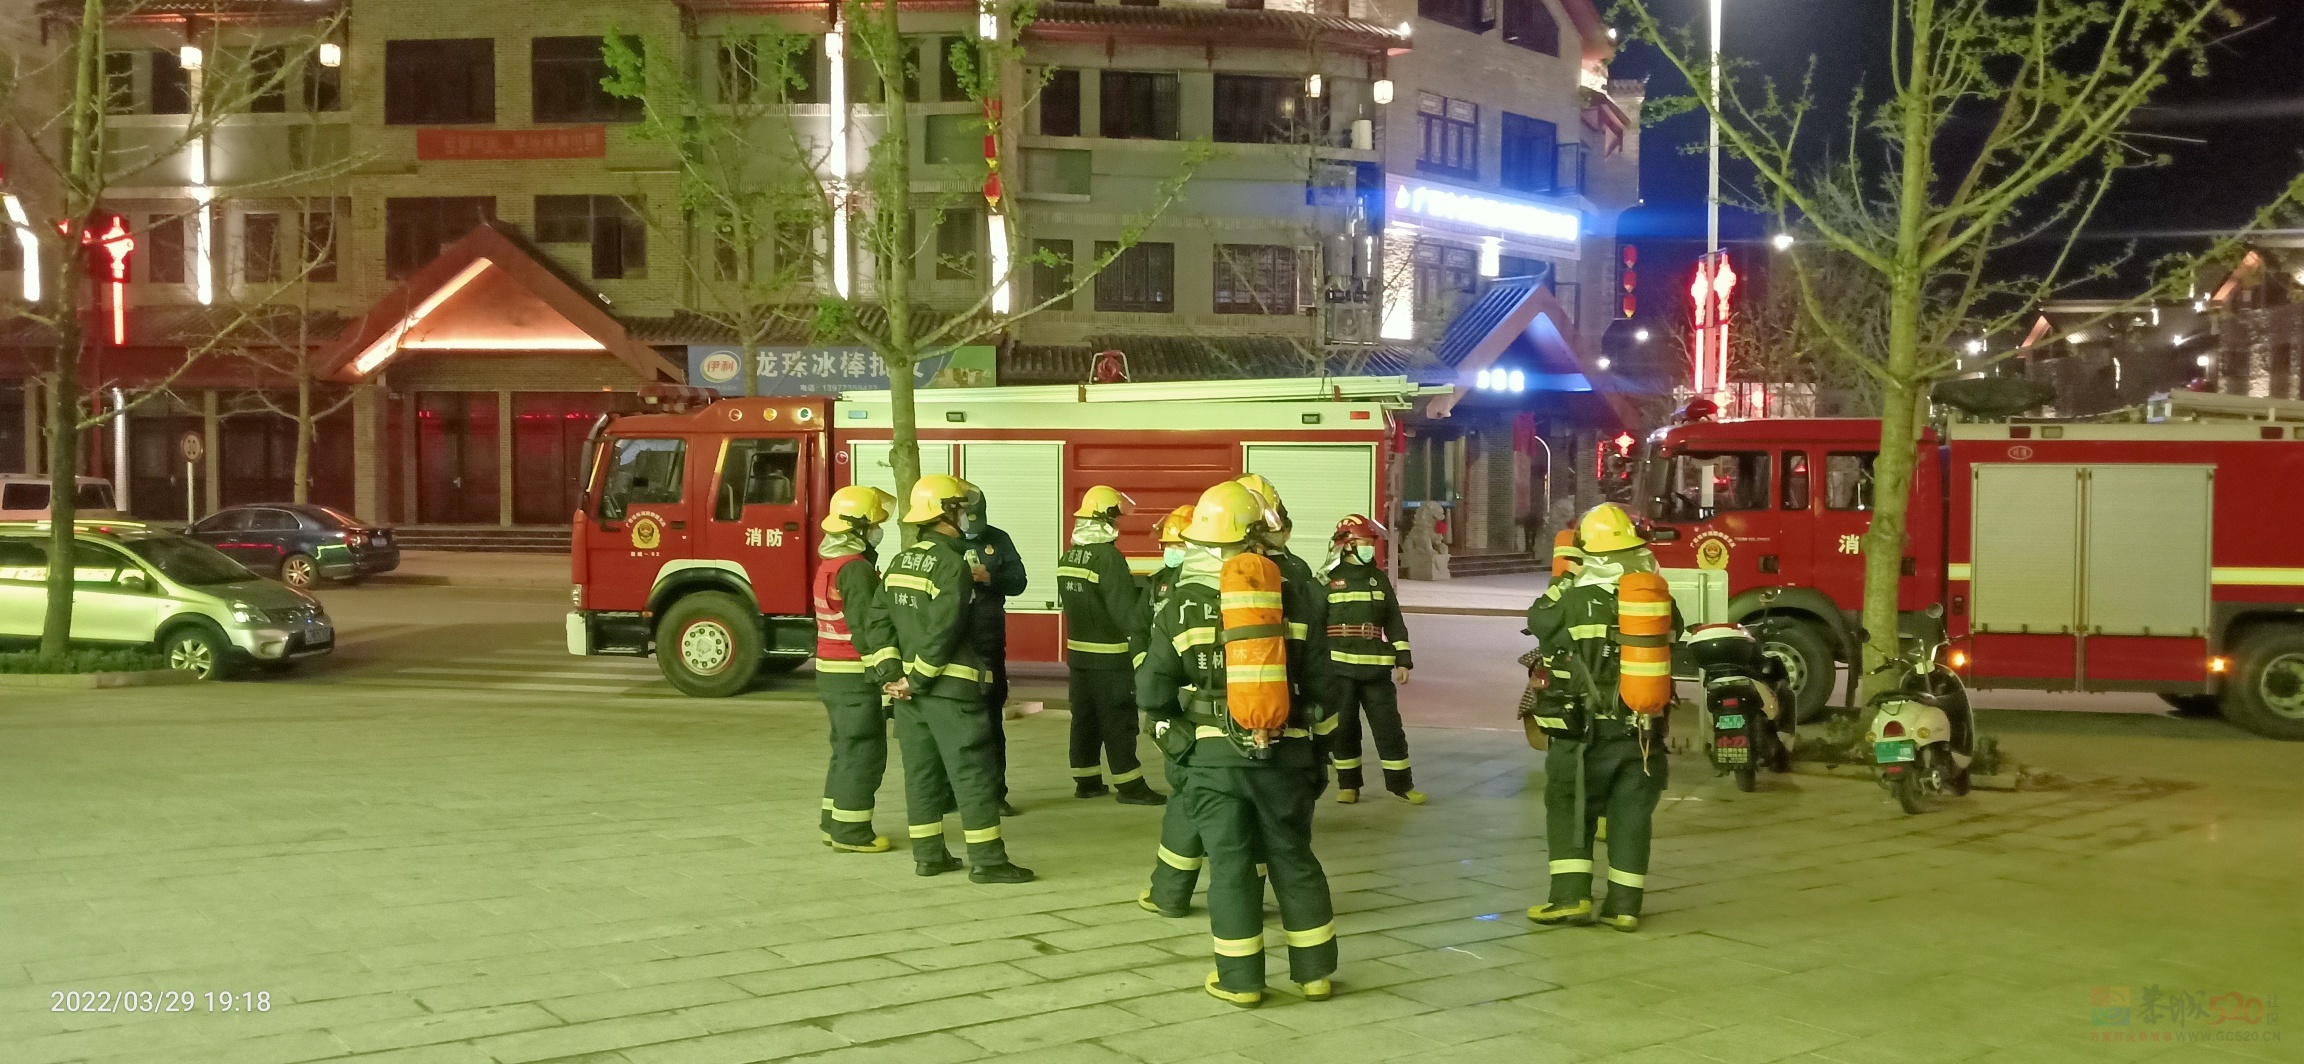 昨晚偶遇消防人员在油茶小镇的六福超市演练消防254 / 作者:陈爱国 / 帖子ID:294073